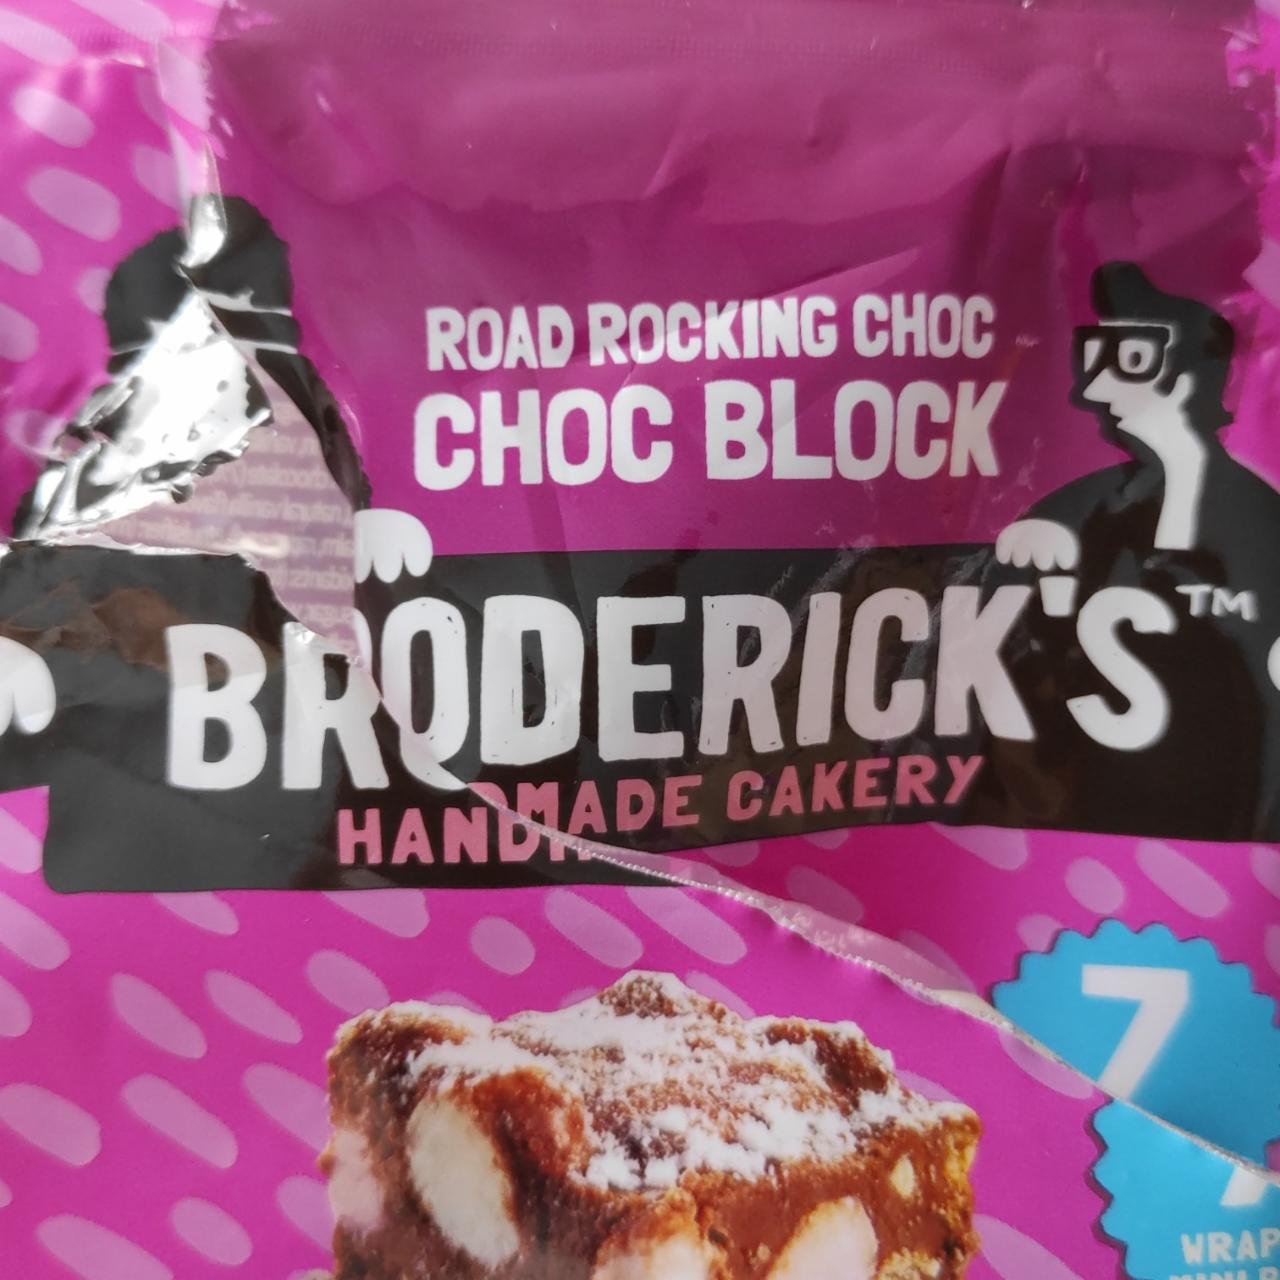 Fotografie - Handmade Road Rocking Choc Choc Block Broderick's